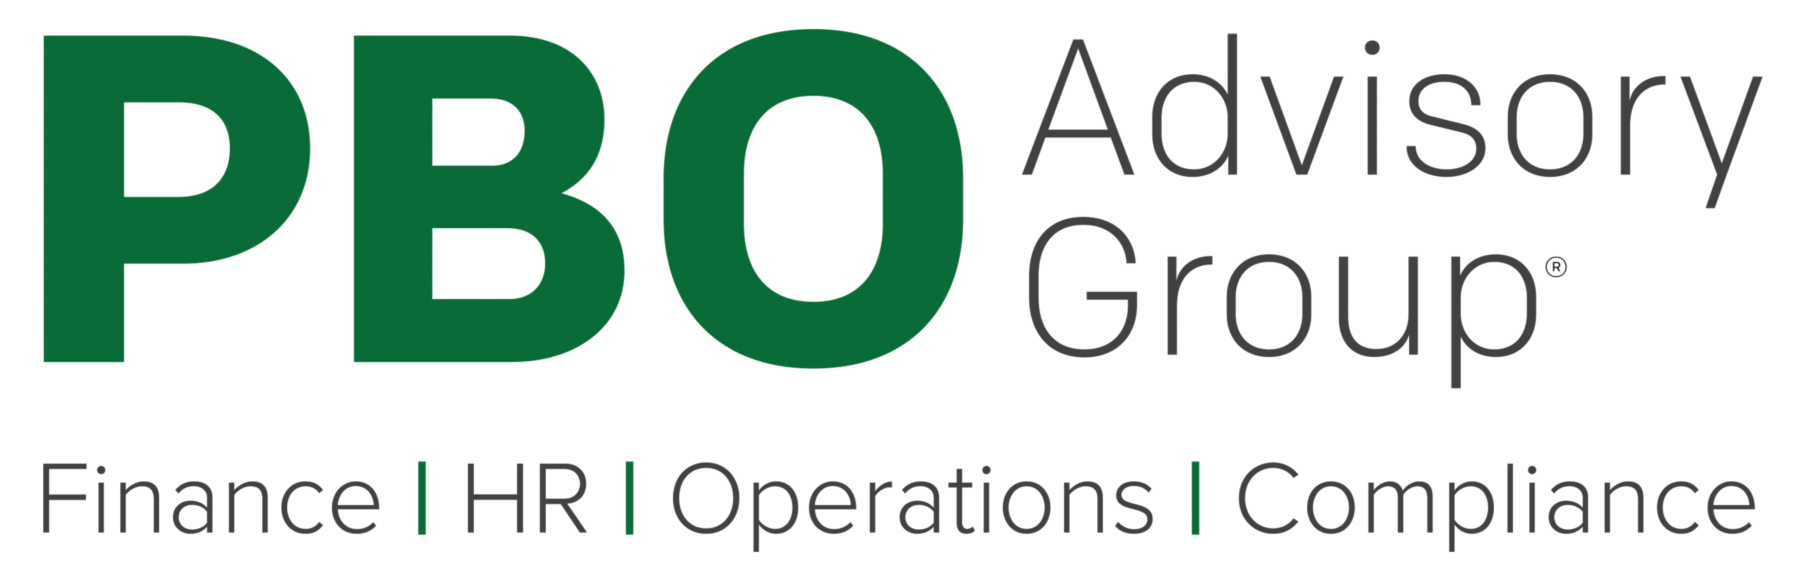 PBO Advisory Group Company Logo